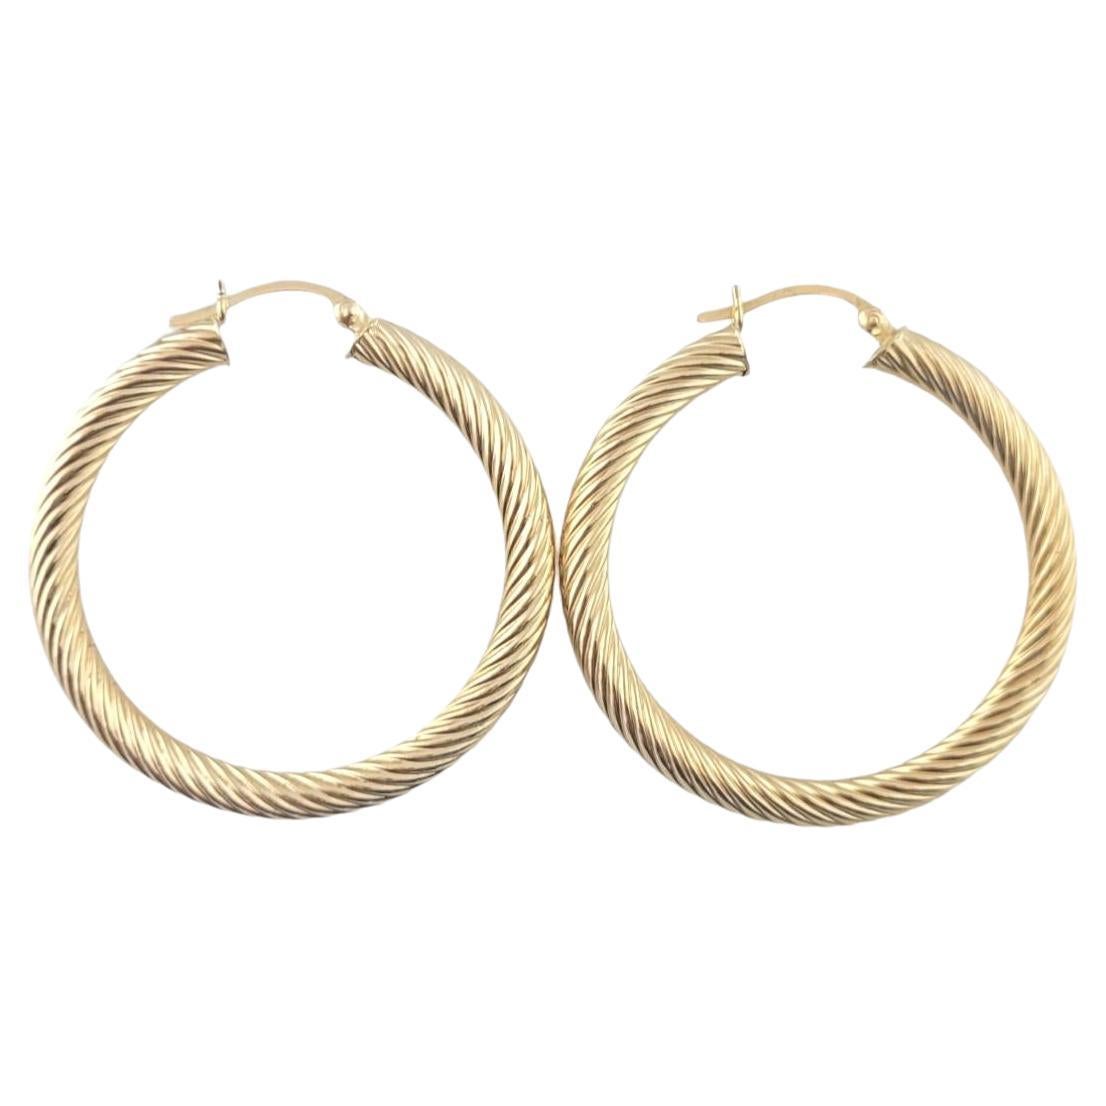 14K Yellow Gold Ribbed Hoop Earrings #16364